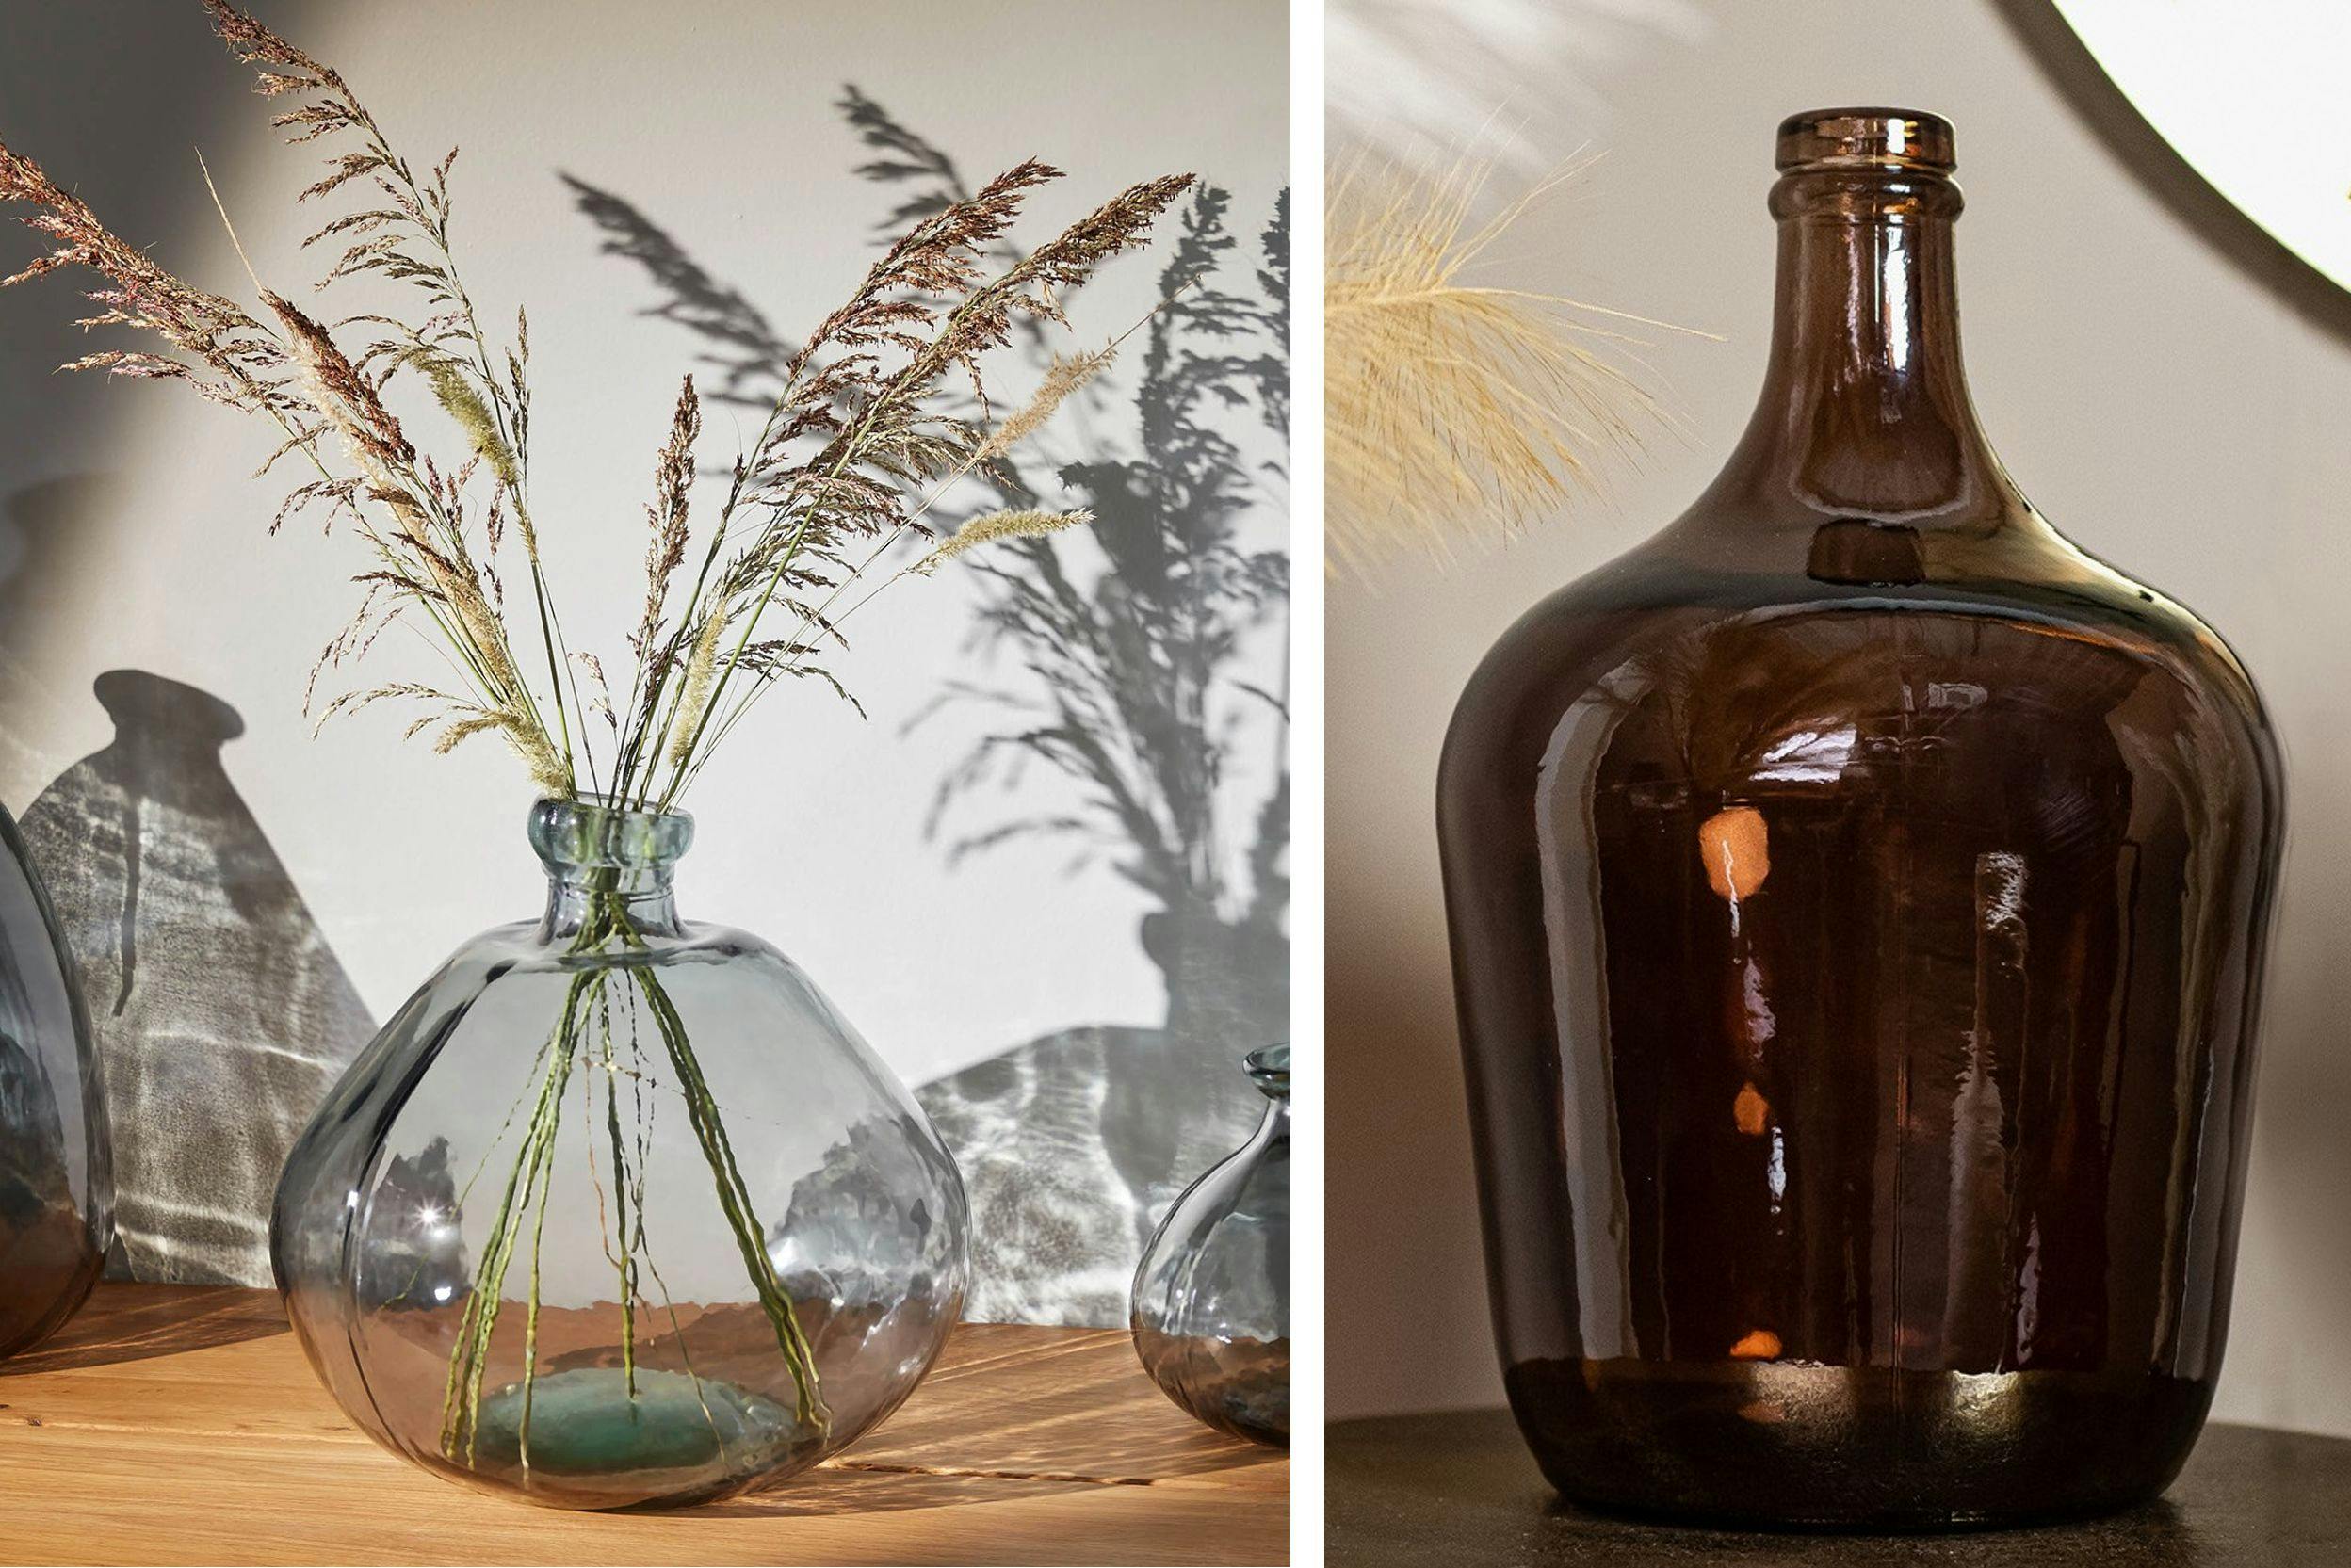 Deux photos : à gauche, un vase bleu translucide de style irrégulier avec des plantes dedans, et à droite, une dame jeanne couleur ambre 